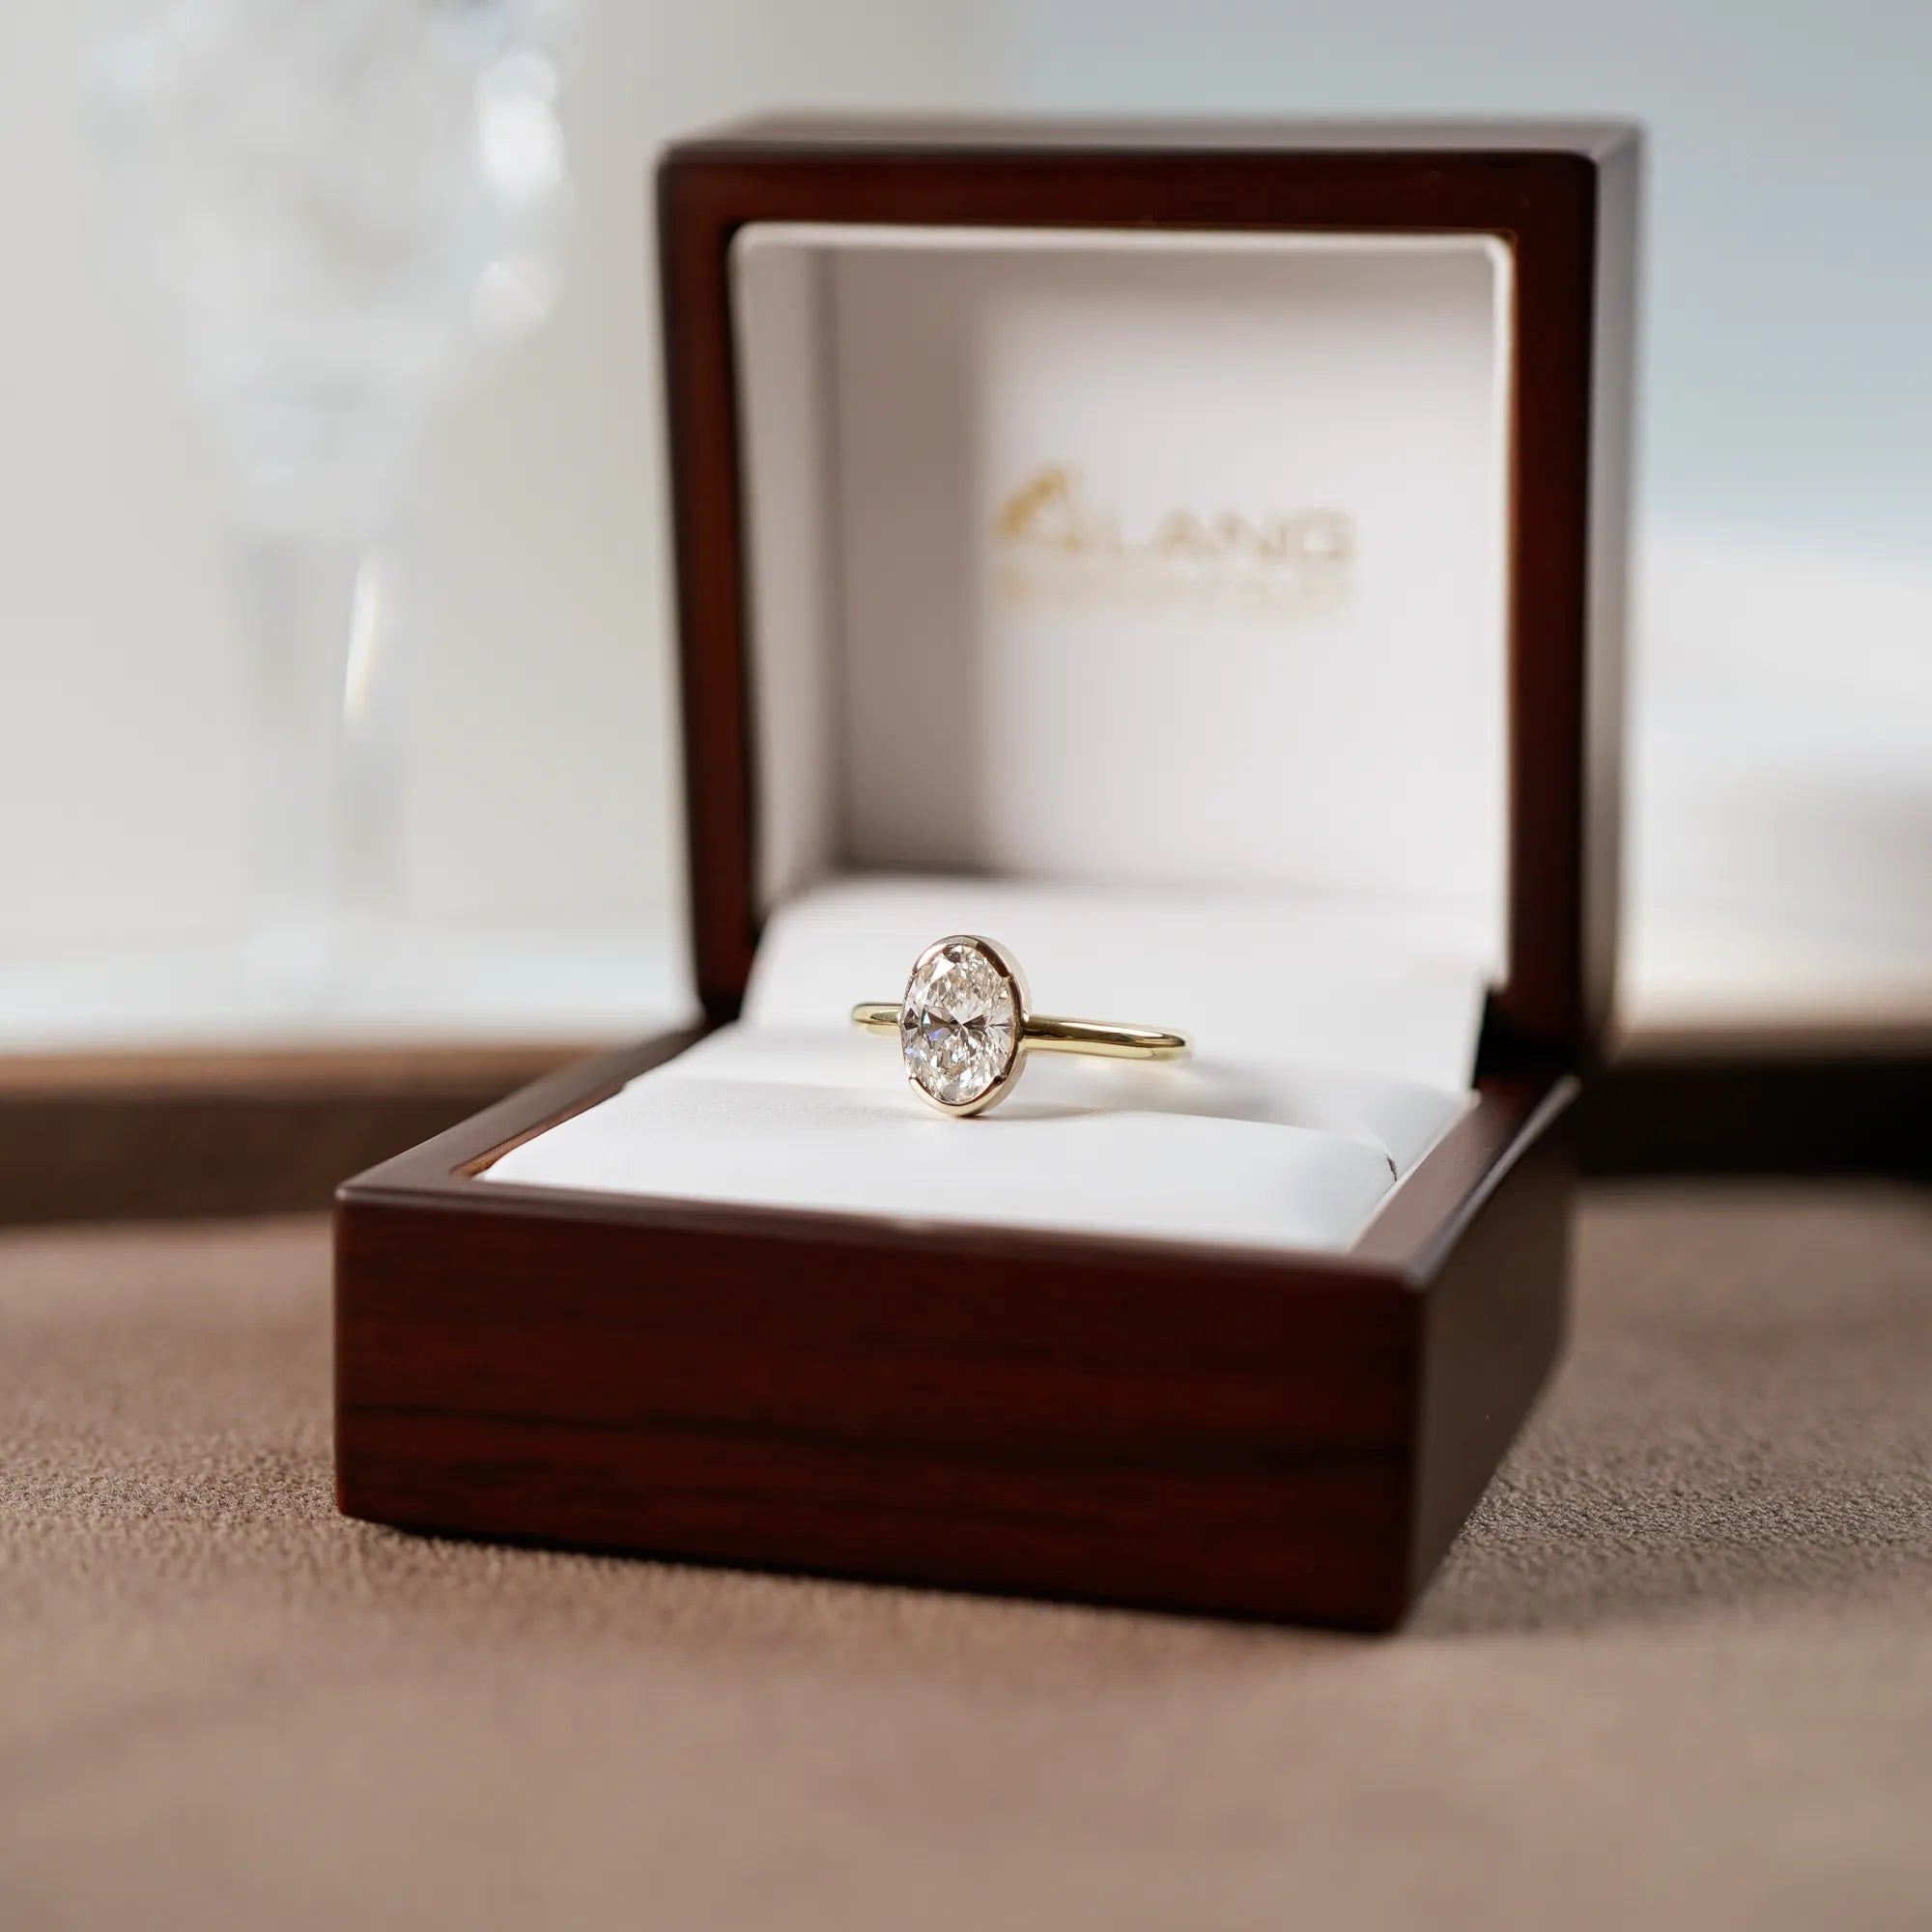 Der in Gelbgold gefertigte Verlobungsring "Gleaming Love" mit einem großen Labor-Diamanten mit 2.03ct liegt in dessen hölzerner Schmuck-Verpackung